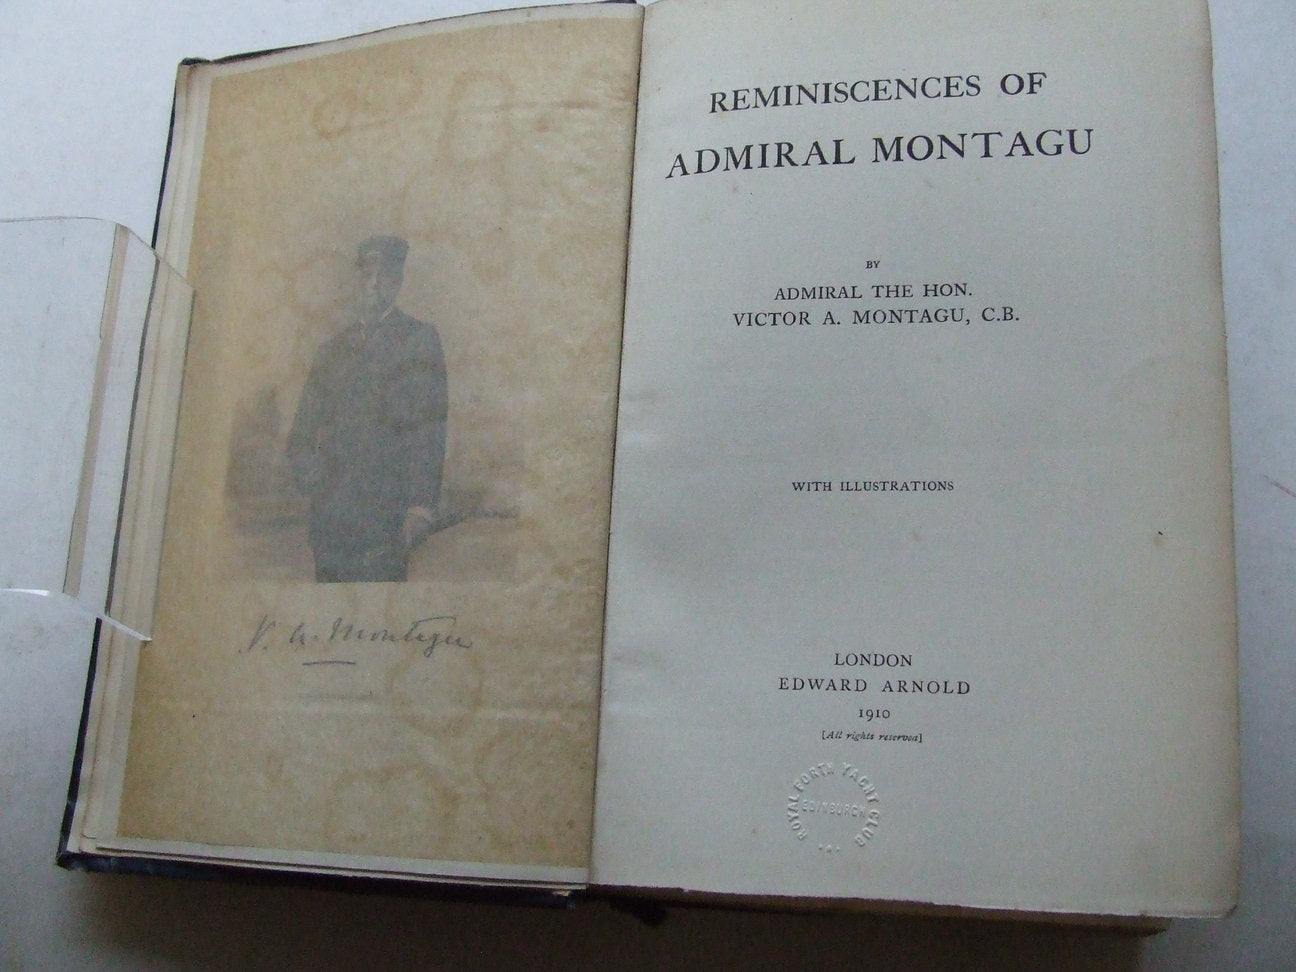 REMINISCENCES OF ADMIRAL MONTAGU